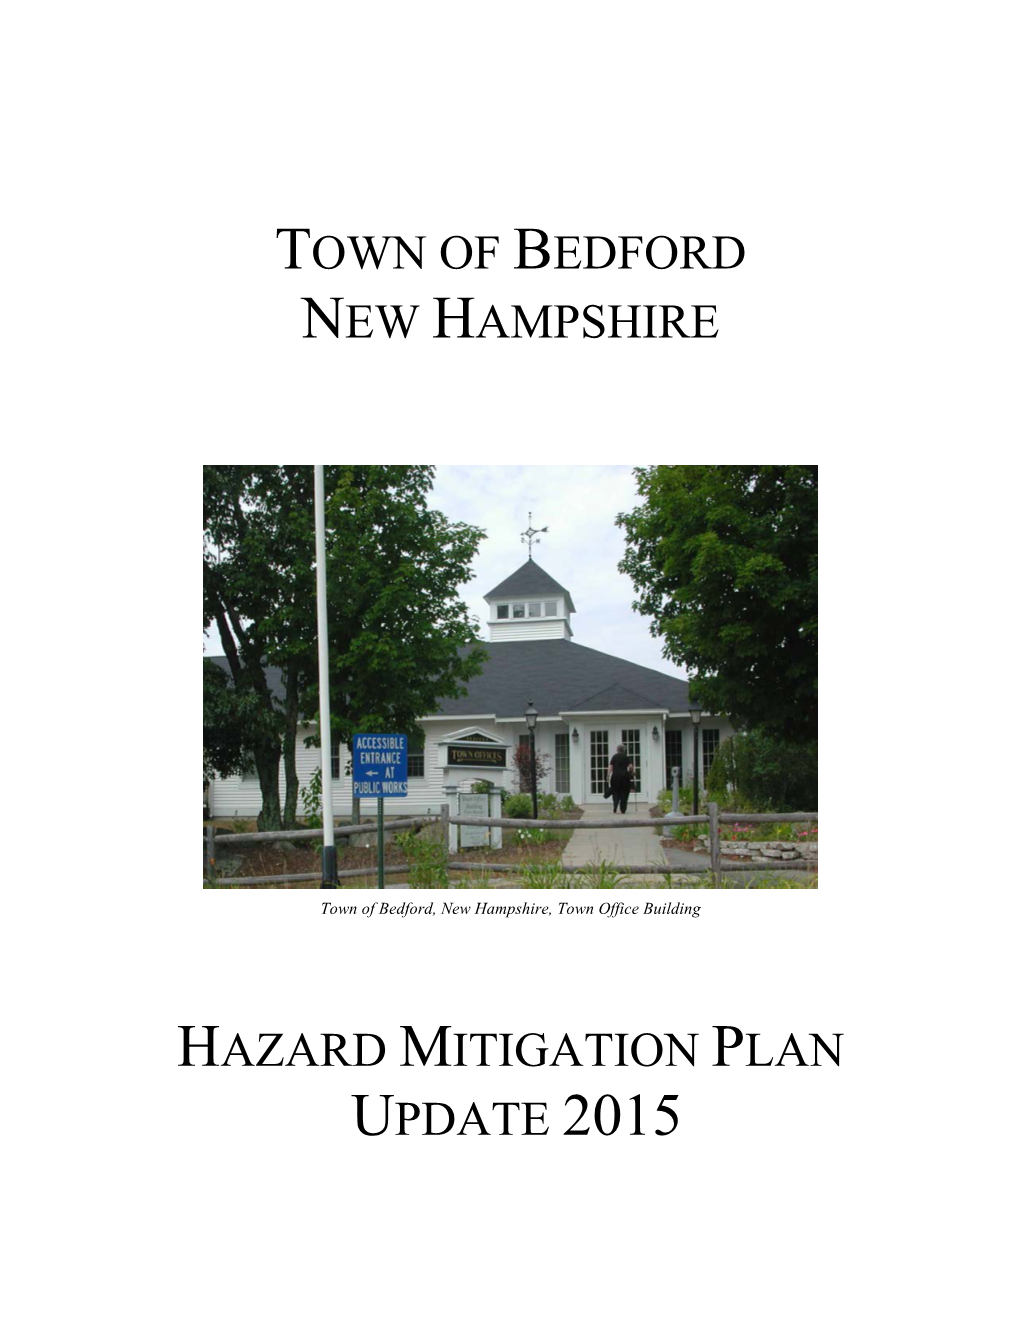 Town of Bedford New Hampshire Hazard Mitigation Plan Update 2015